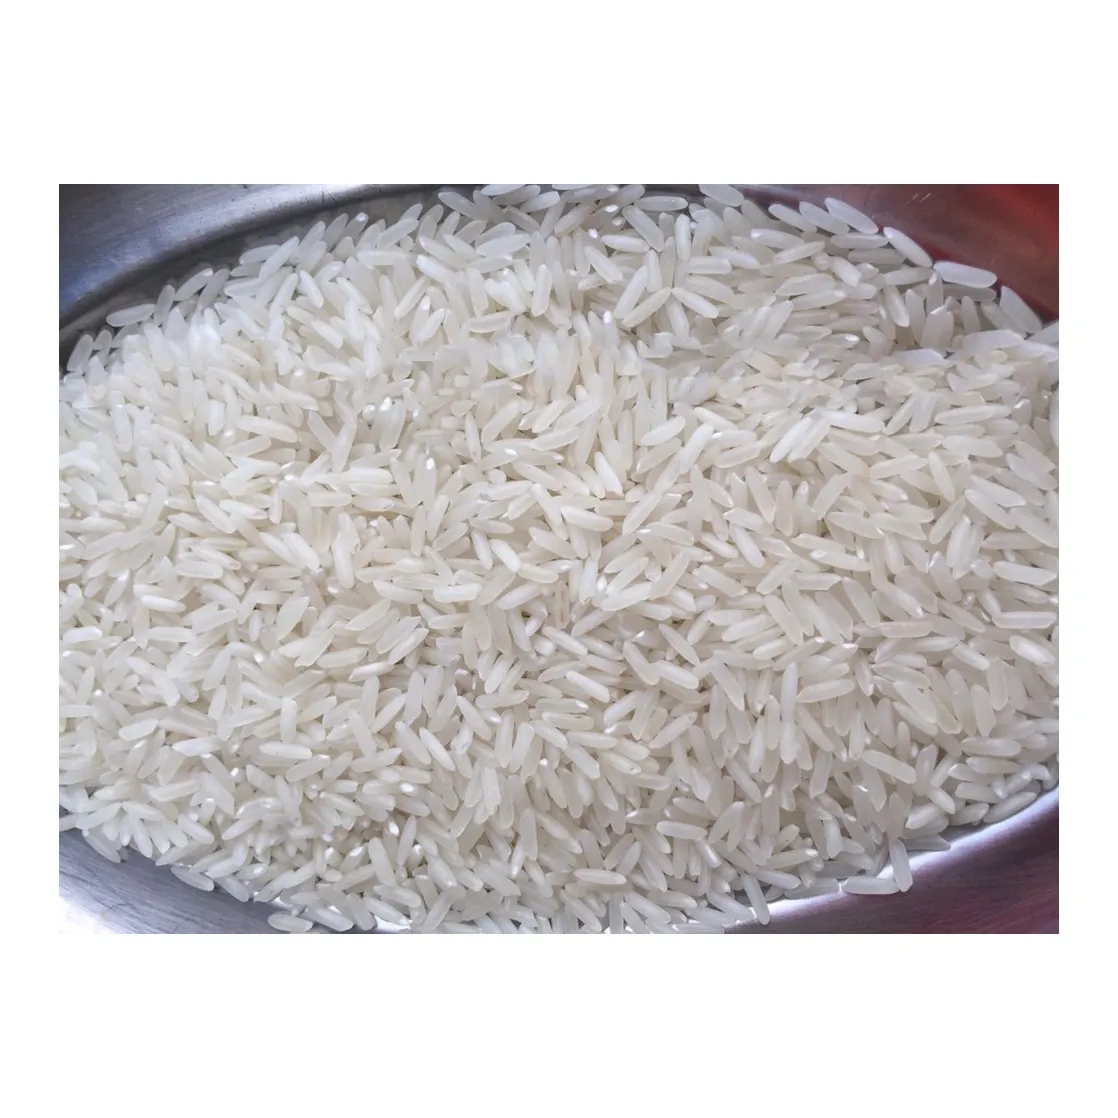 أفضل نوعية من حبوب الأرز الطويلة غير الباسمتي \ اشترِ حبوب الأرز الطويلة غير الباسمتي بالجملة بسعر رخيص